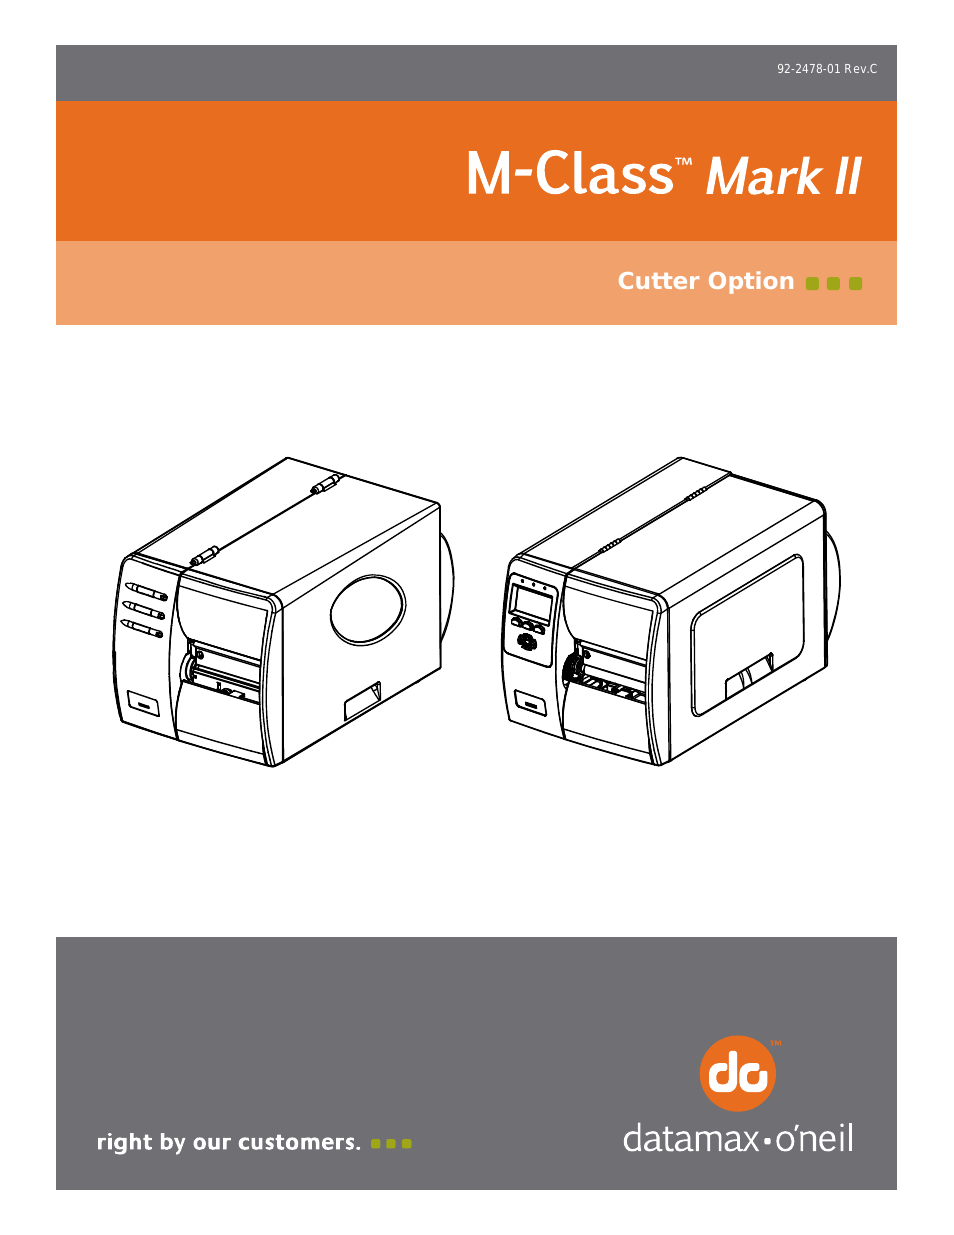 M-Class Mark II Cutter Option